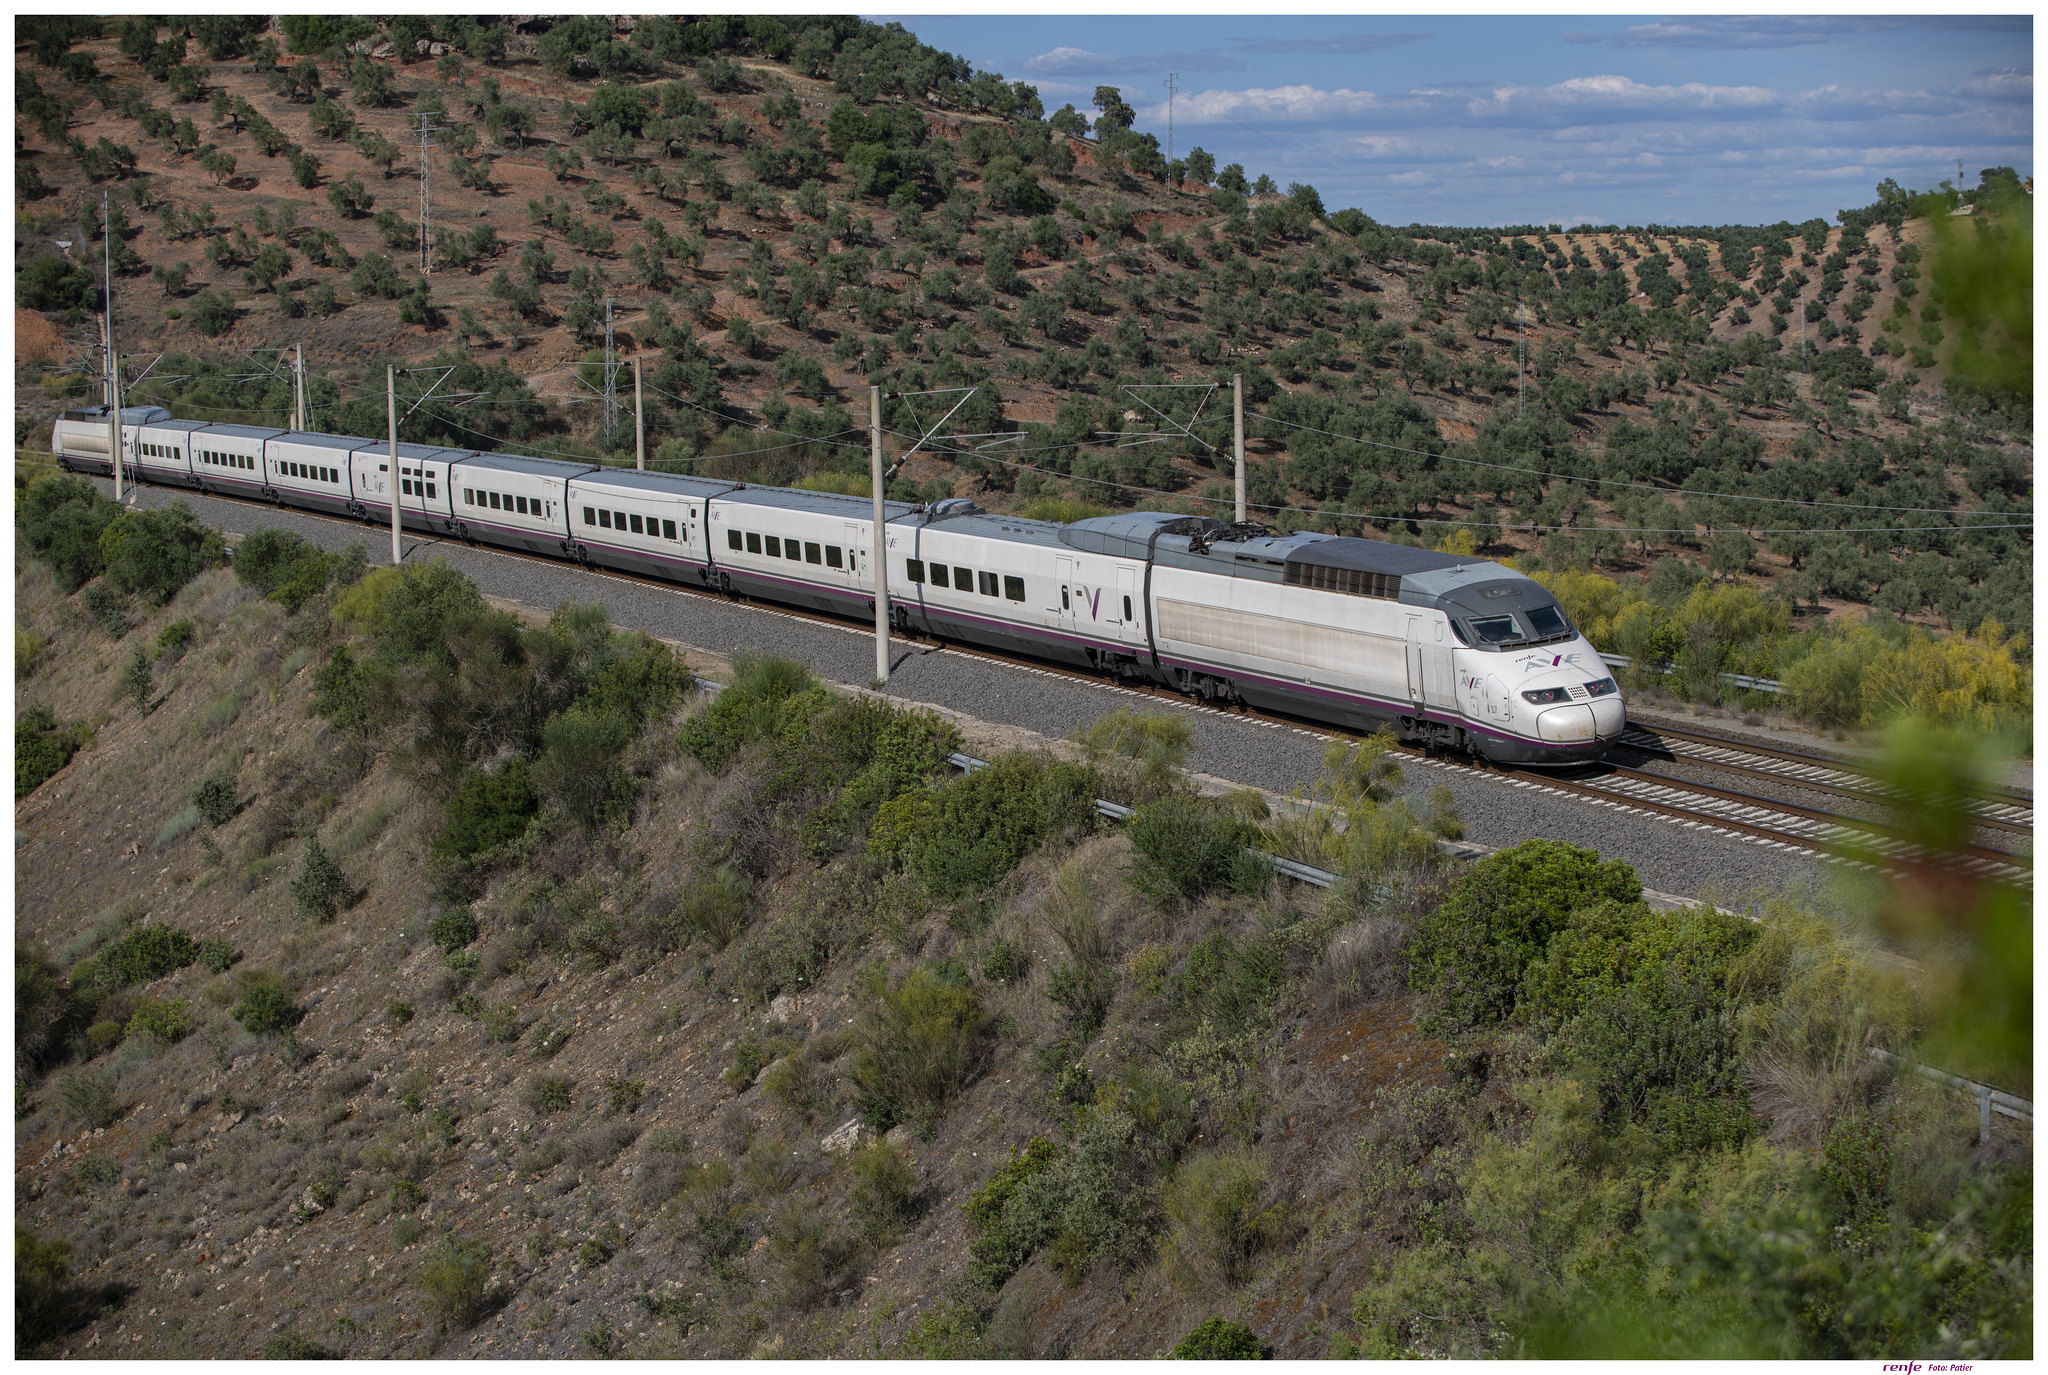 Europe - 31 000 billets vendus pour les trains de la société espagnole AVE en France !